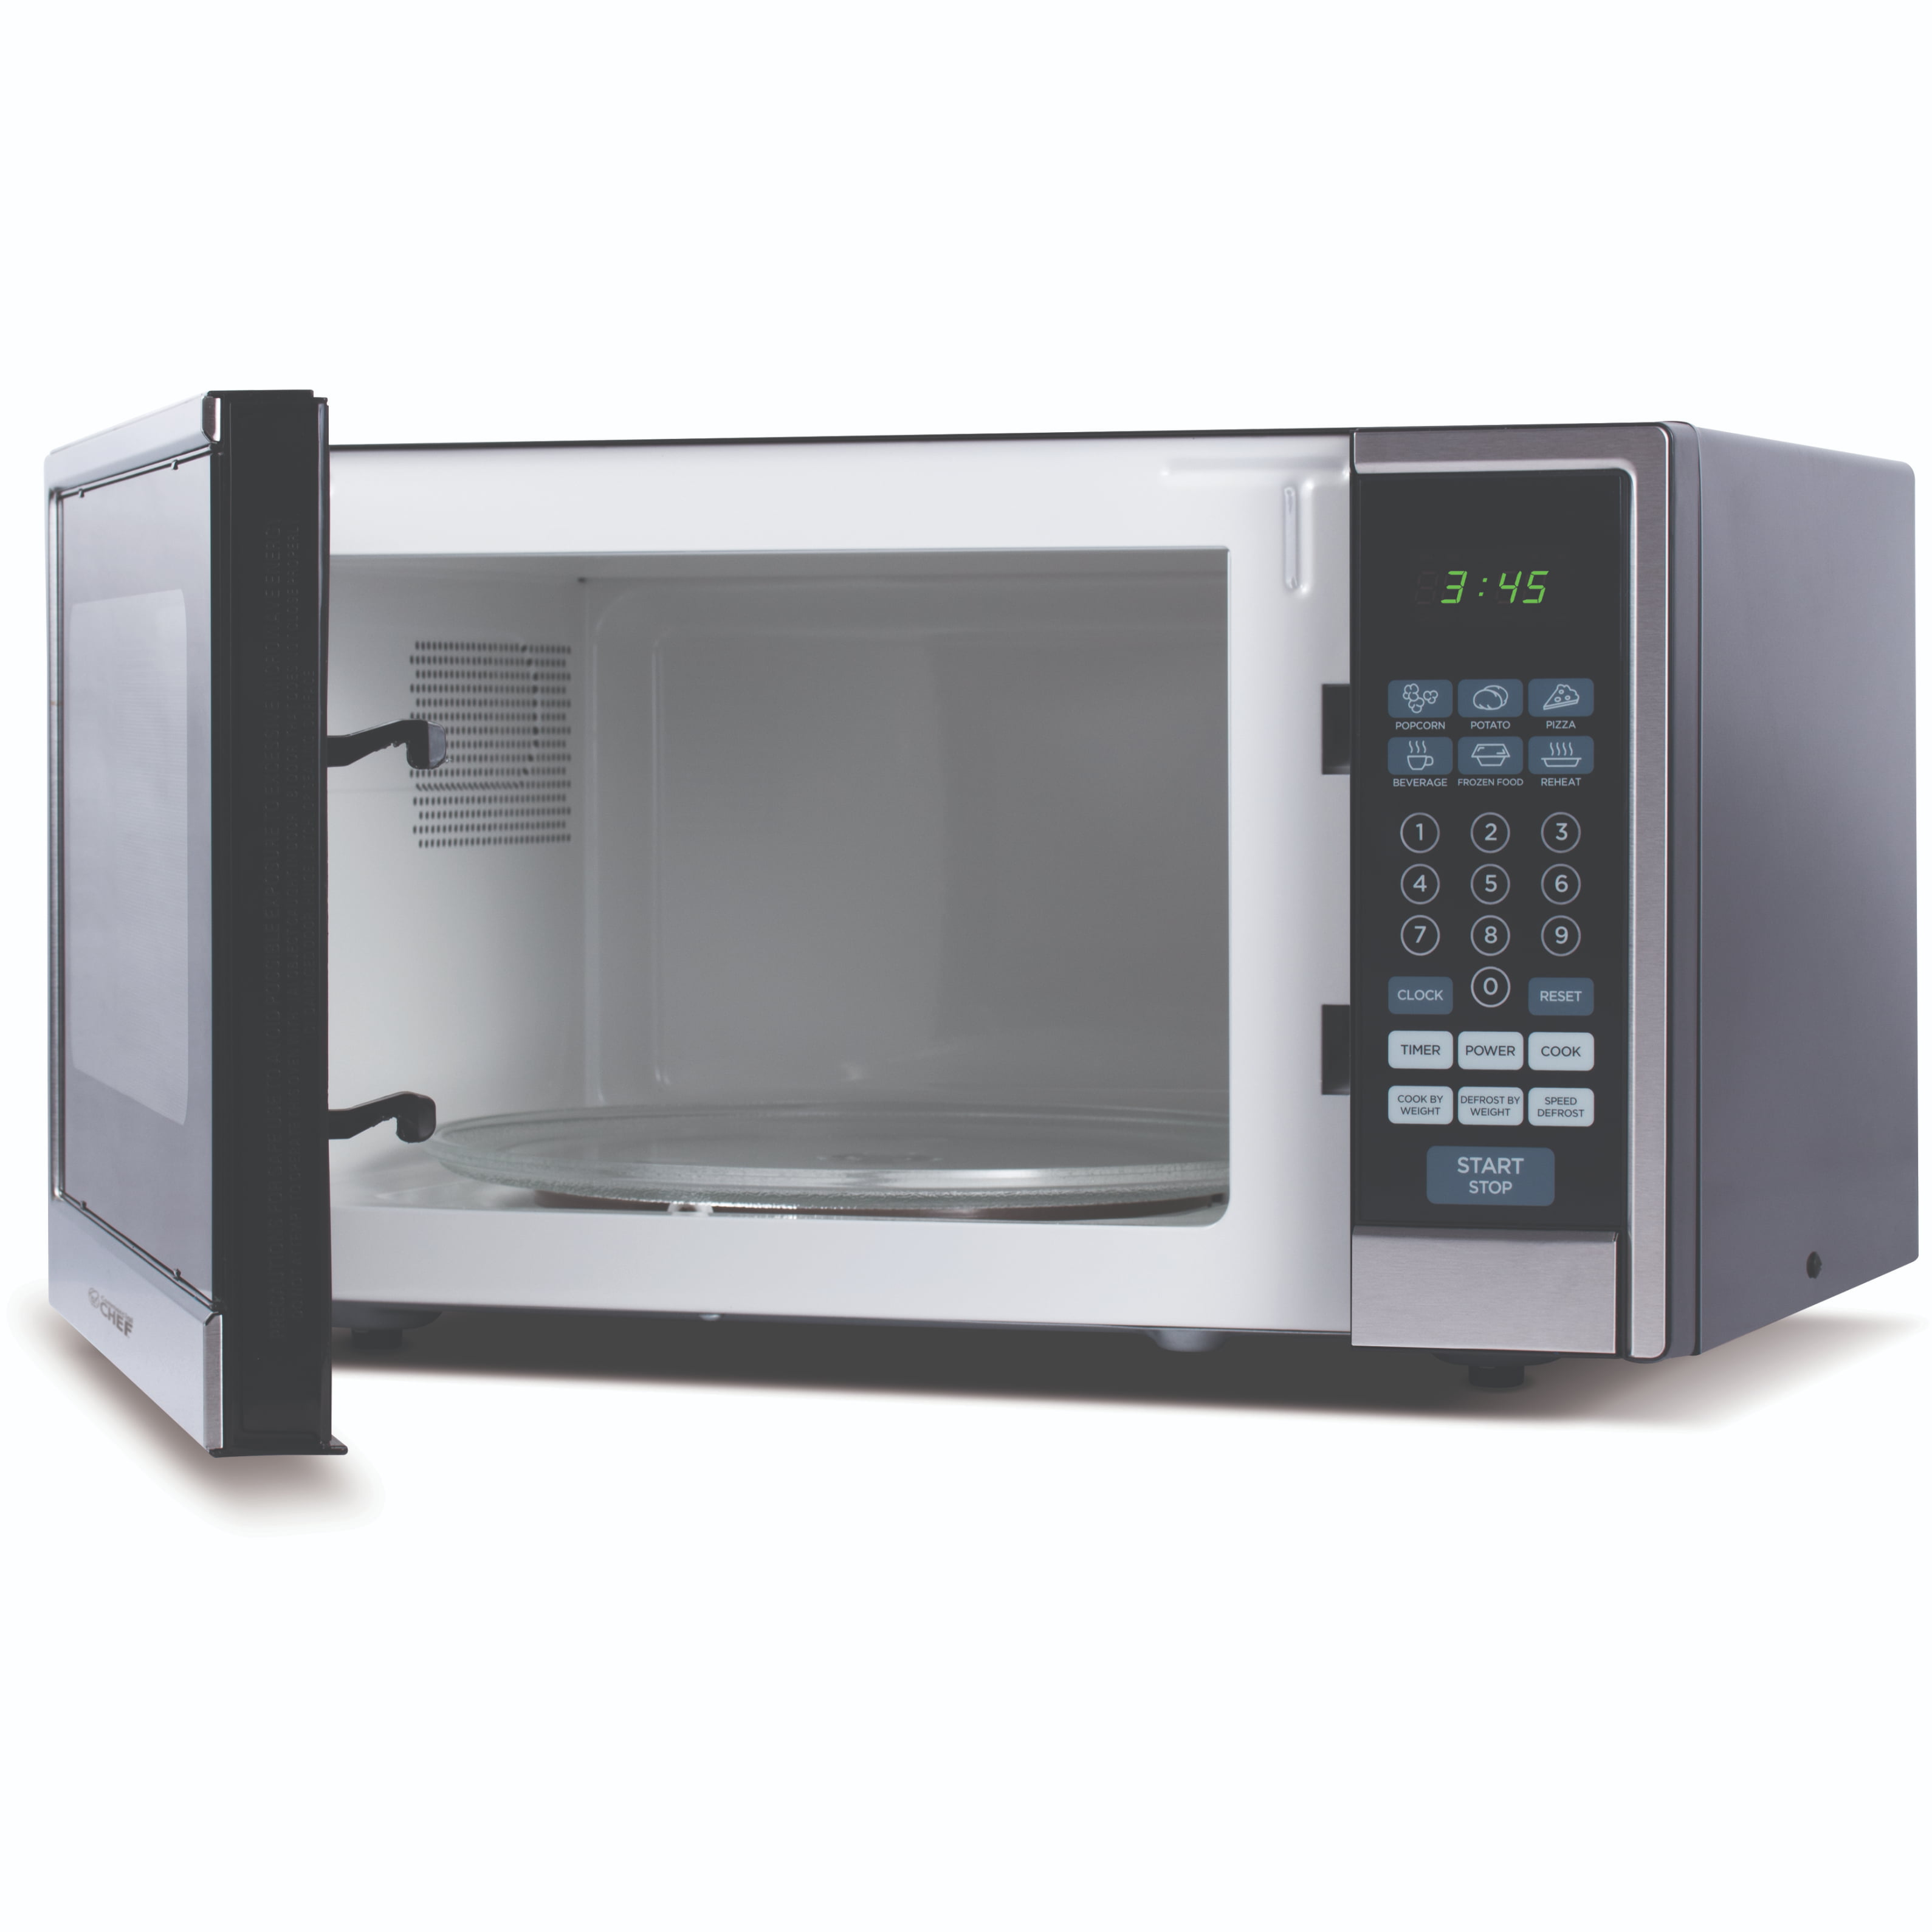 Печь свч 1. Микроволновая печь Microwave Oven. Печь микроволновая (1ф, 220в, 0.8КВТ). Микроволновка Beston sd2086b. Печь СВЧ "Airhot wp900".